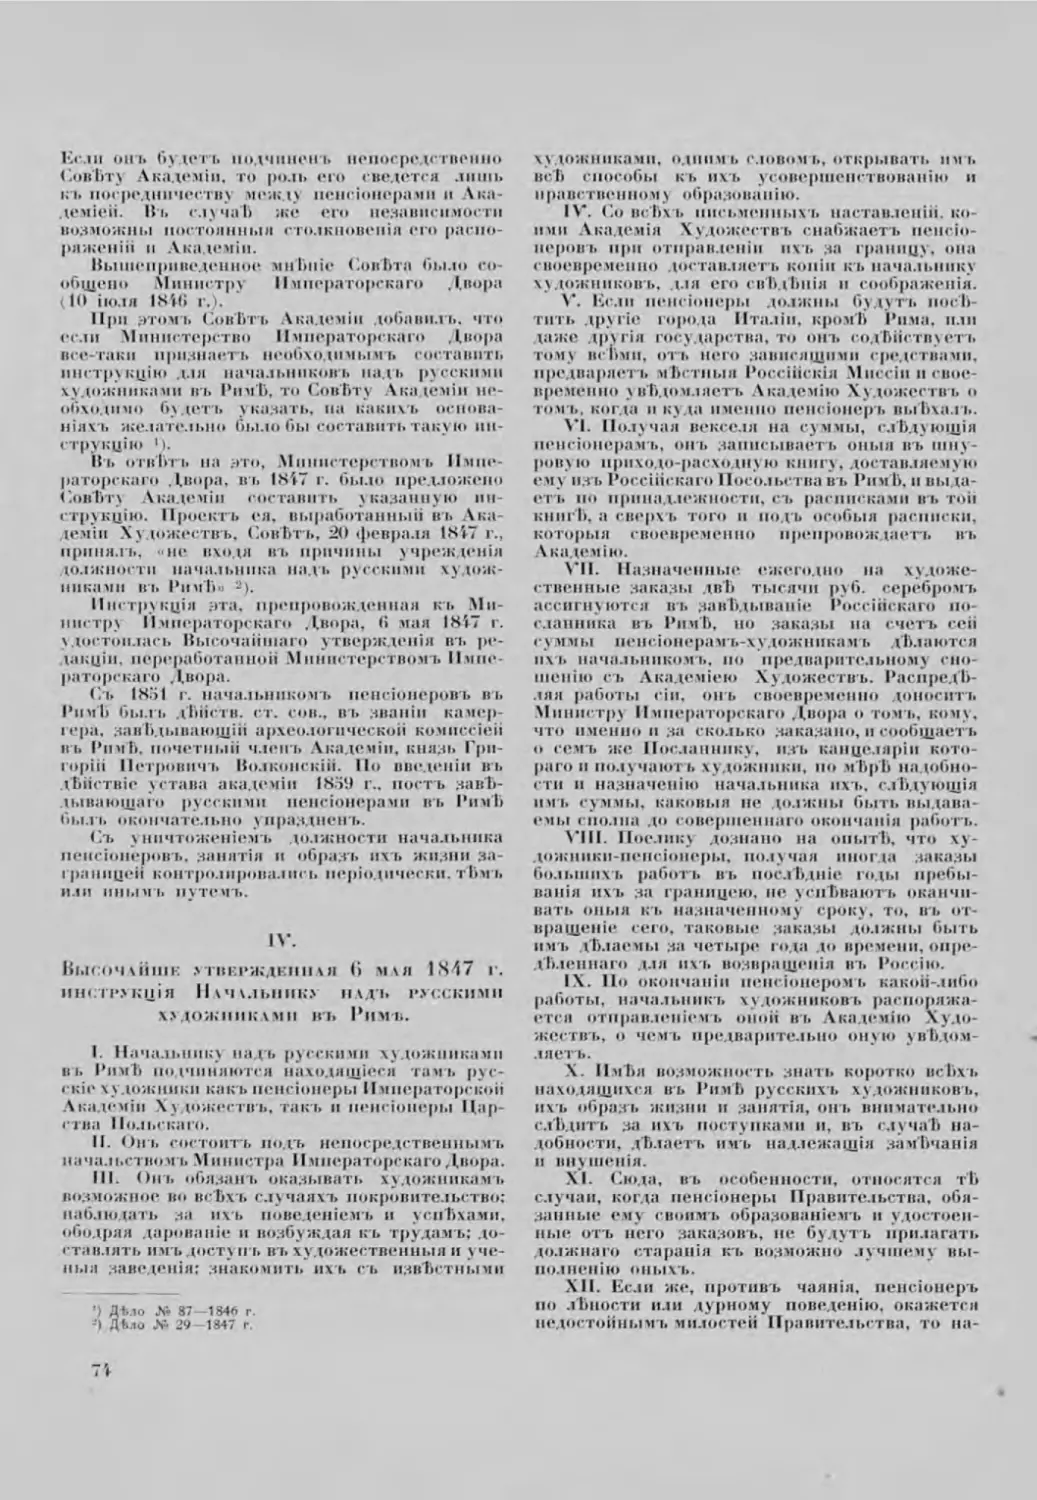 IV. Высочайше утвержденная 6 мая 1847 г. инструкція Начальнику надь русскими художниками въ Риме